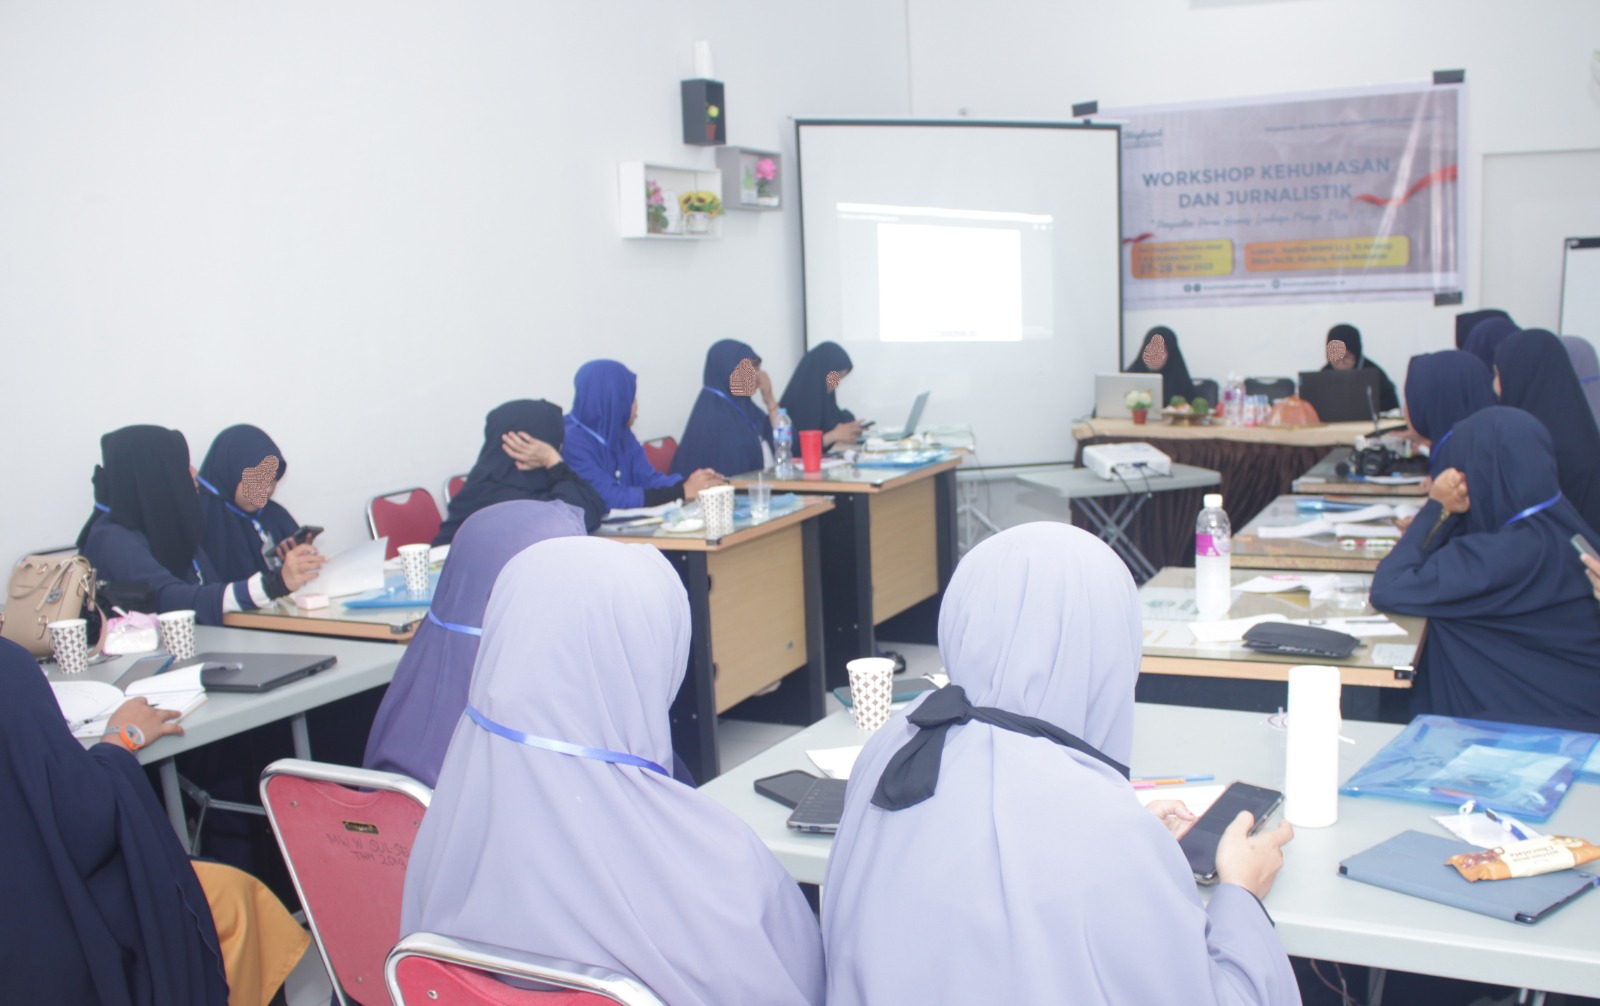 Tingkatkan Minat Menulis, Muslimah Wahdah Wilayah Sulsel Helat Workshop Kehumasan dan Jurnalistik